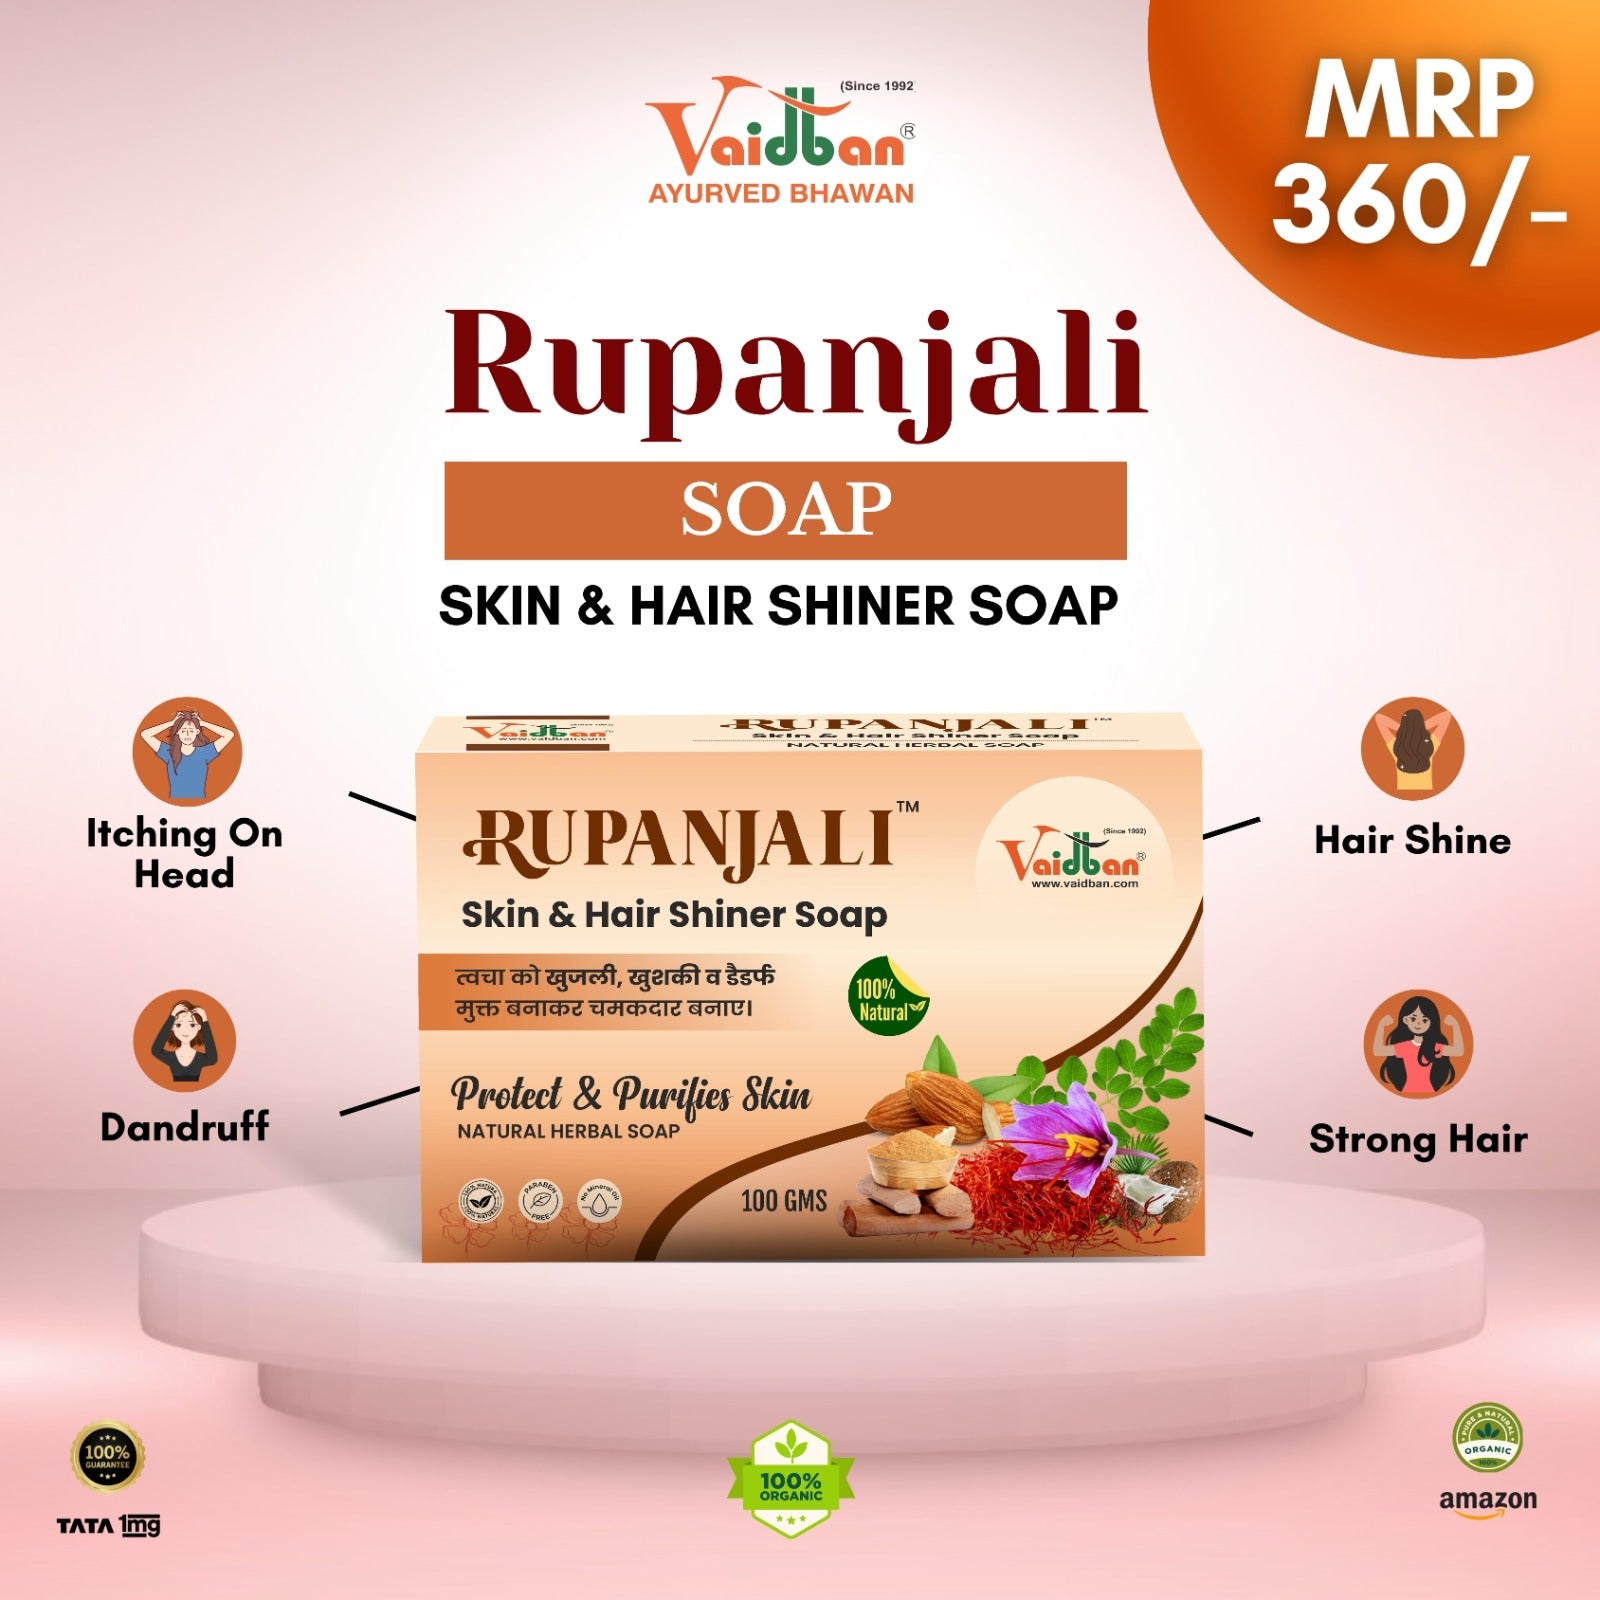 Vaidban Rupanjali Soap – The Ultimate Skin & Hair Shiner!